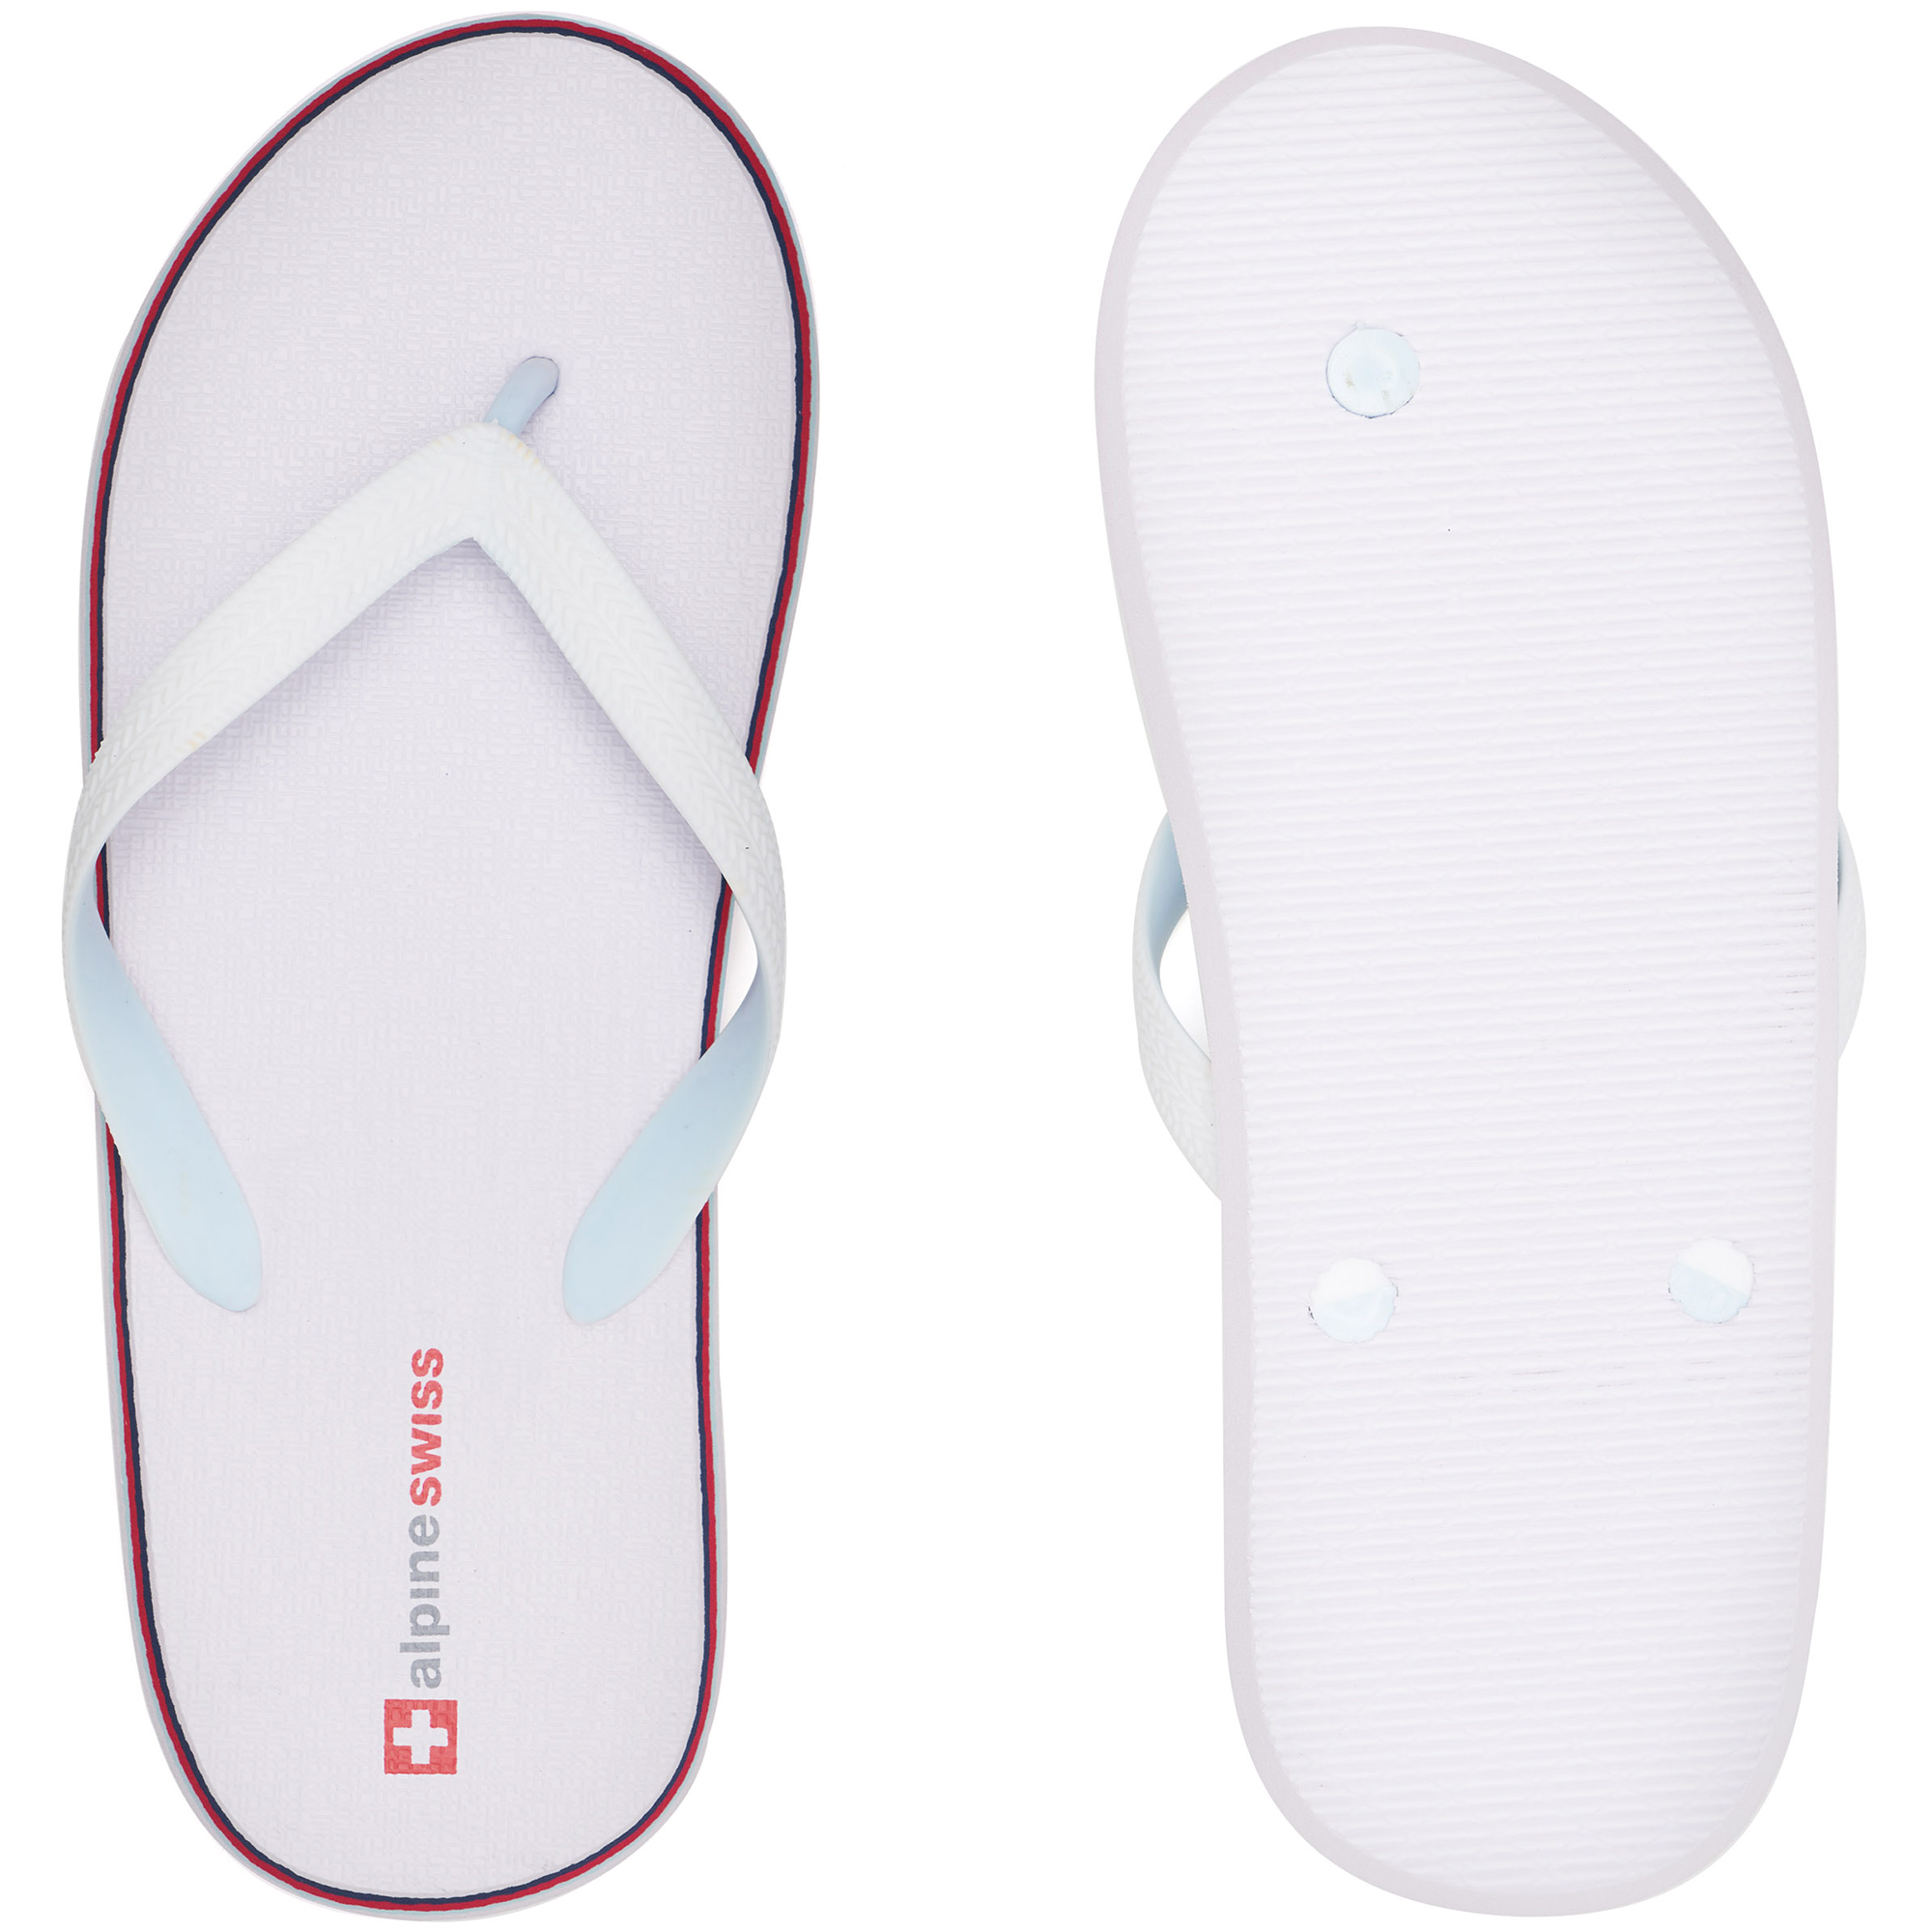 Alpine Swiss Mens Flip Flops Lightweight EVA Thong Summer Sandals Beach Shoes - image 4 of 6